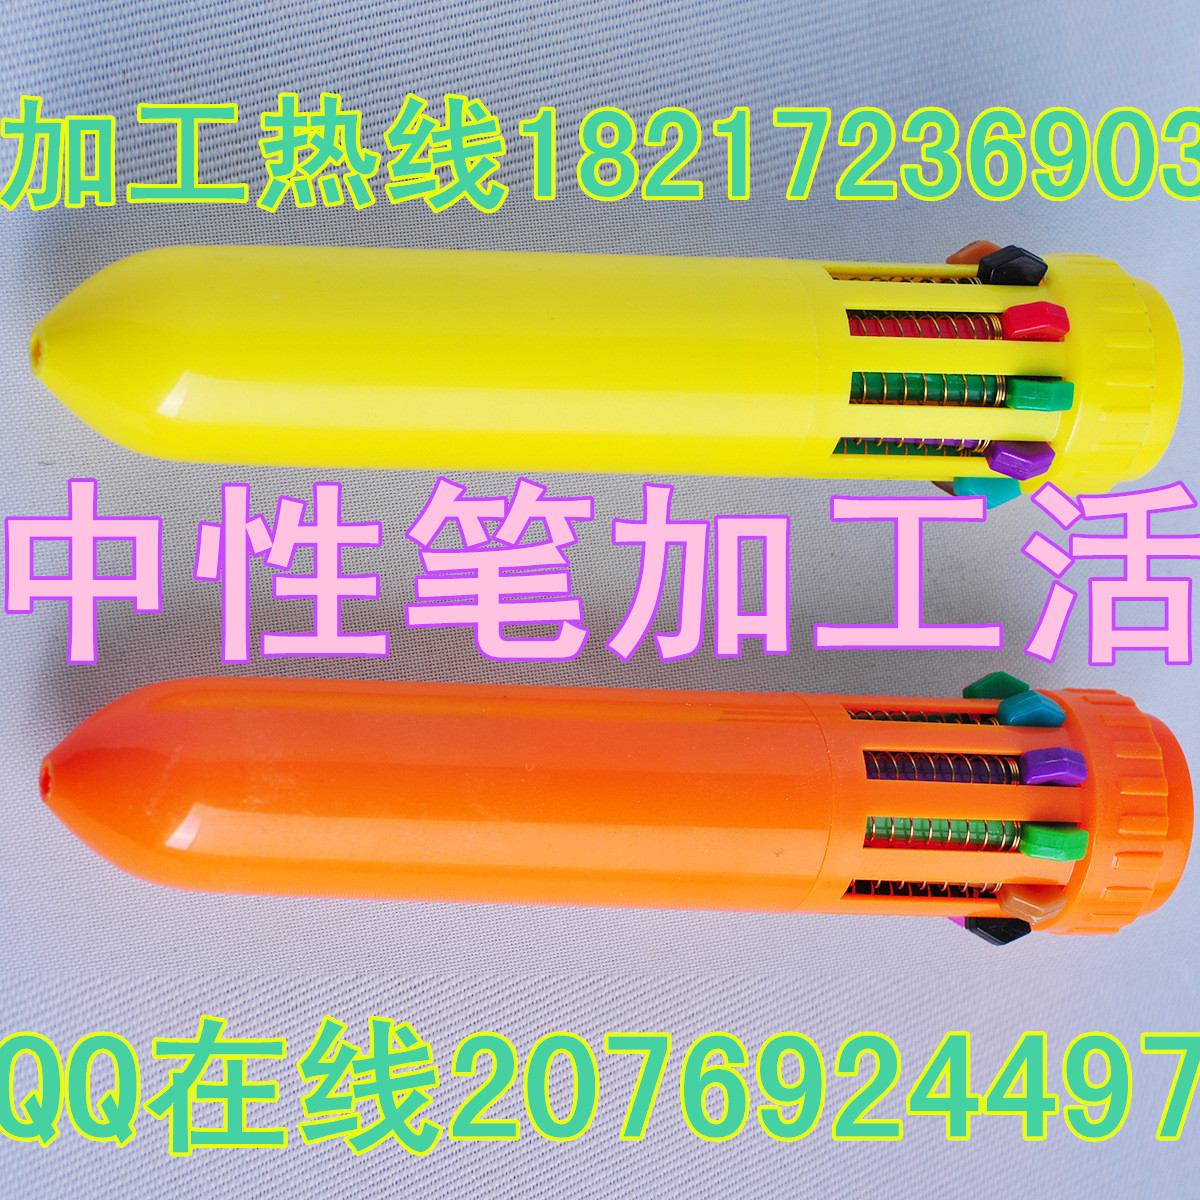 上海市纯手工活加工圆珠笔中性笔厂家供应用于销售的纯手工活加工圆珠笔中性笔代加工活，在家带孩子闲人兼职都可以做简单易学长期活带回家组装